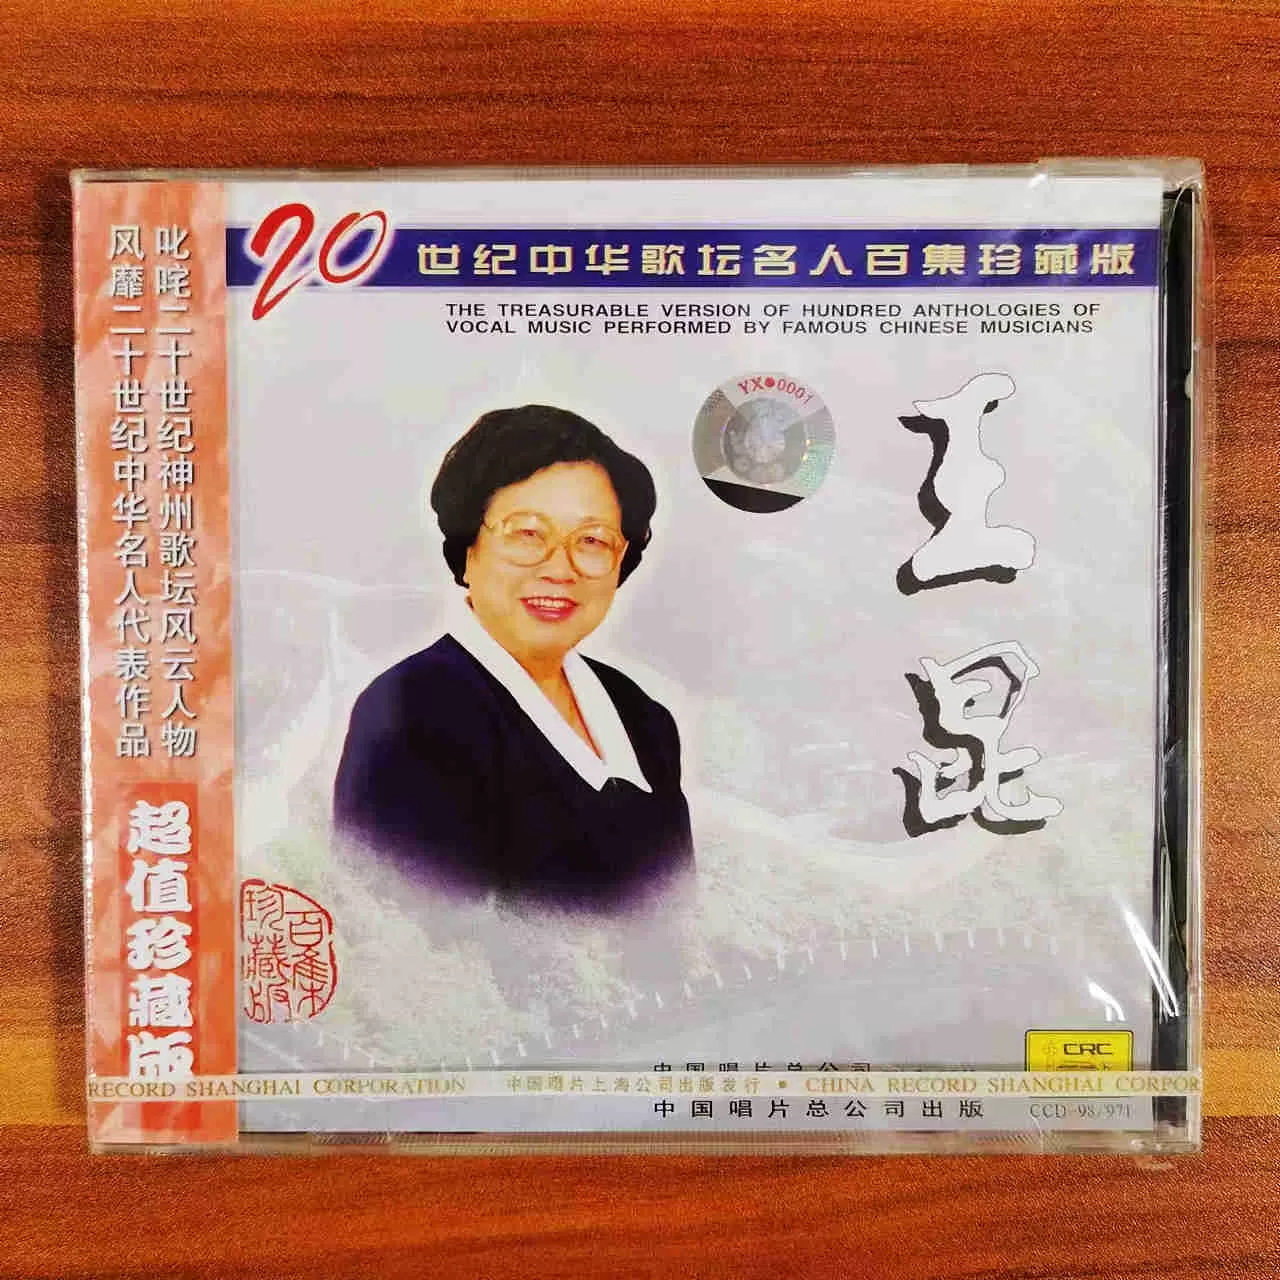 中唱上海发行正版王昆20世纪中华歌坛名人百集珍藏版CD-Taobao